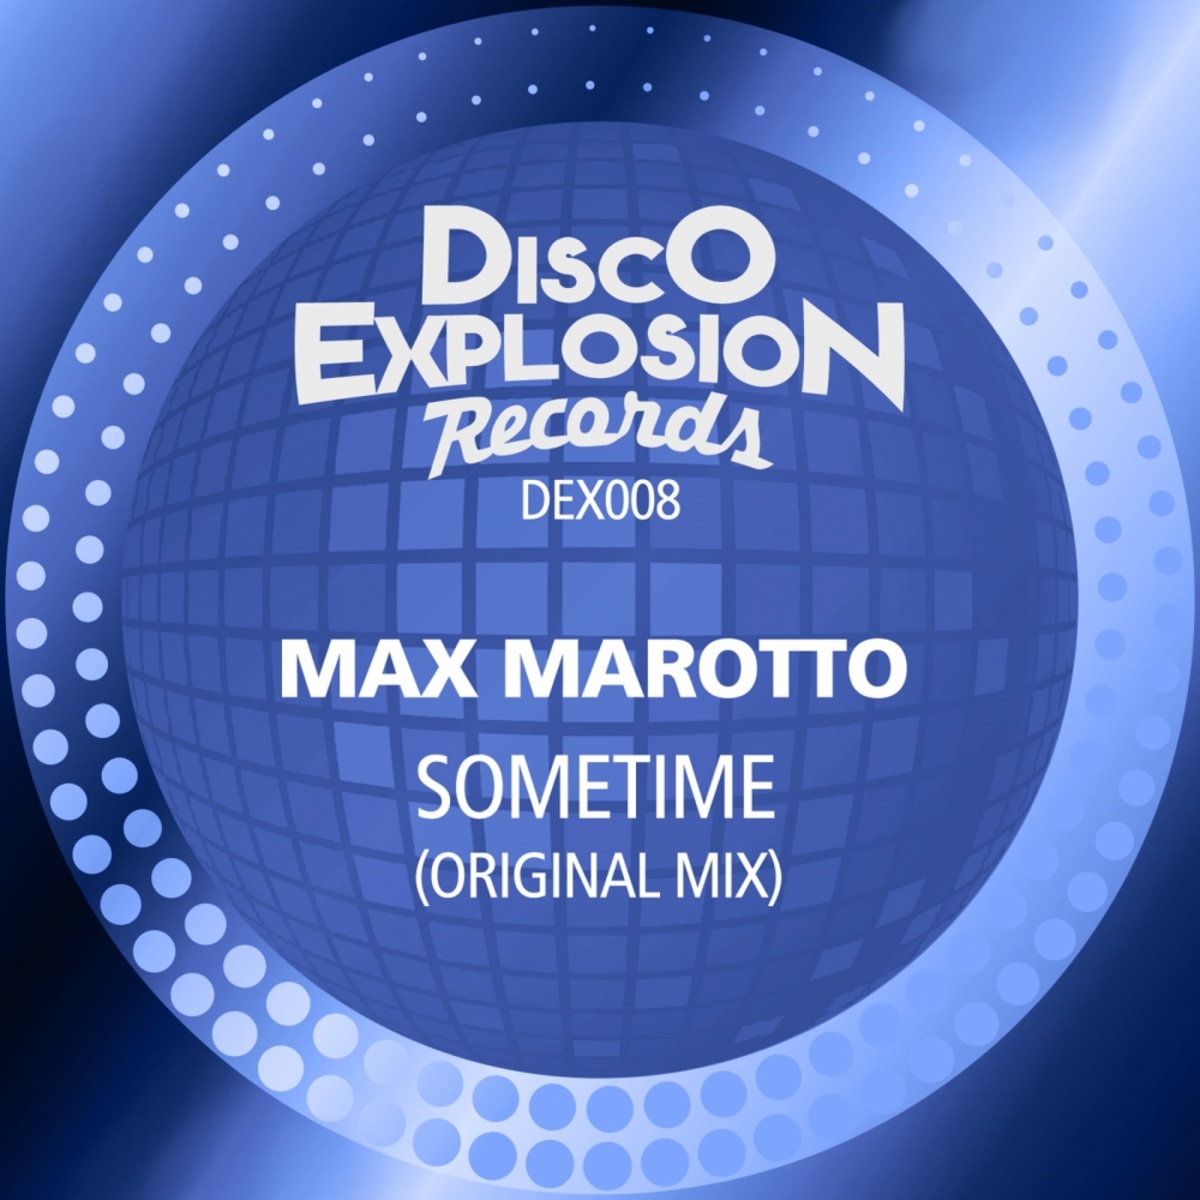 Max Marotto - Sometime / Disco Explosion Records